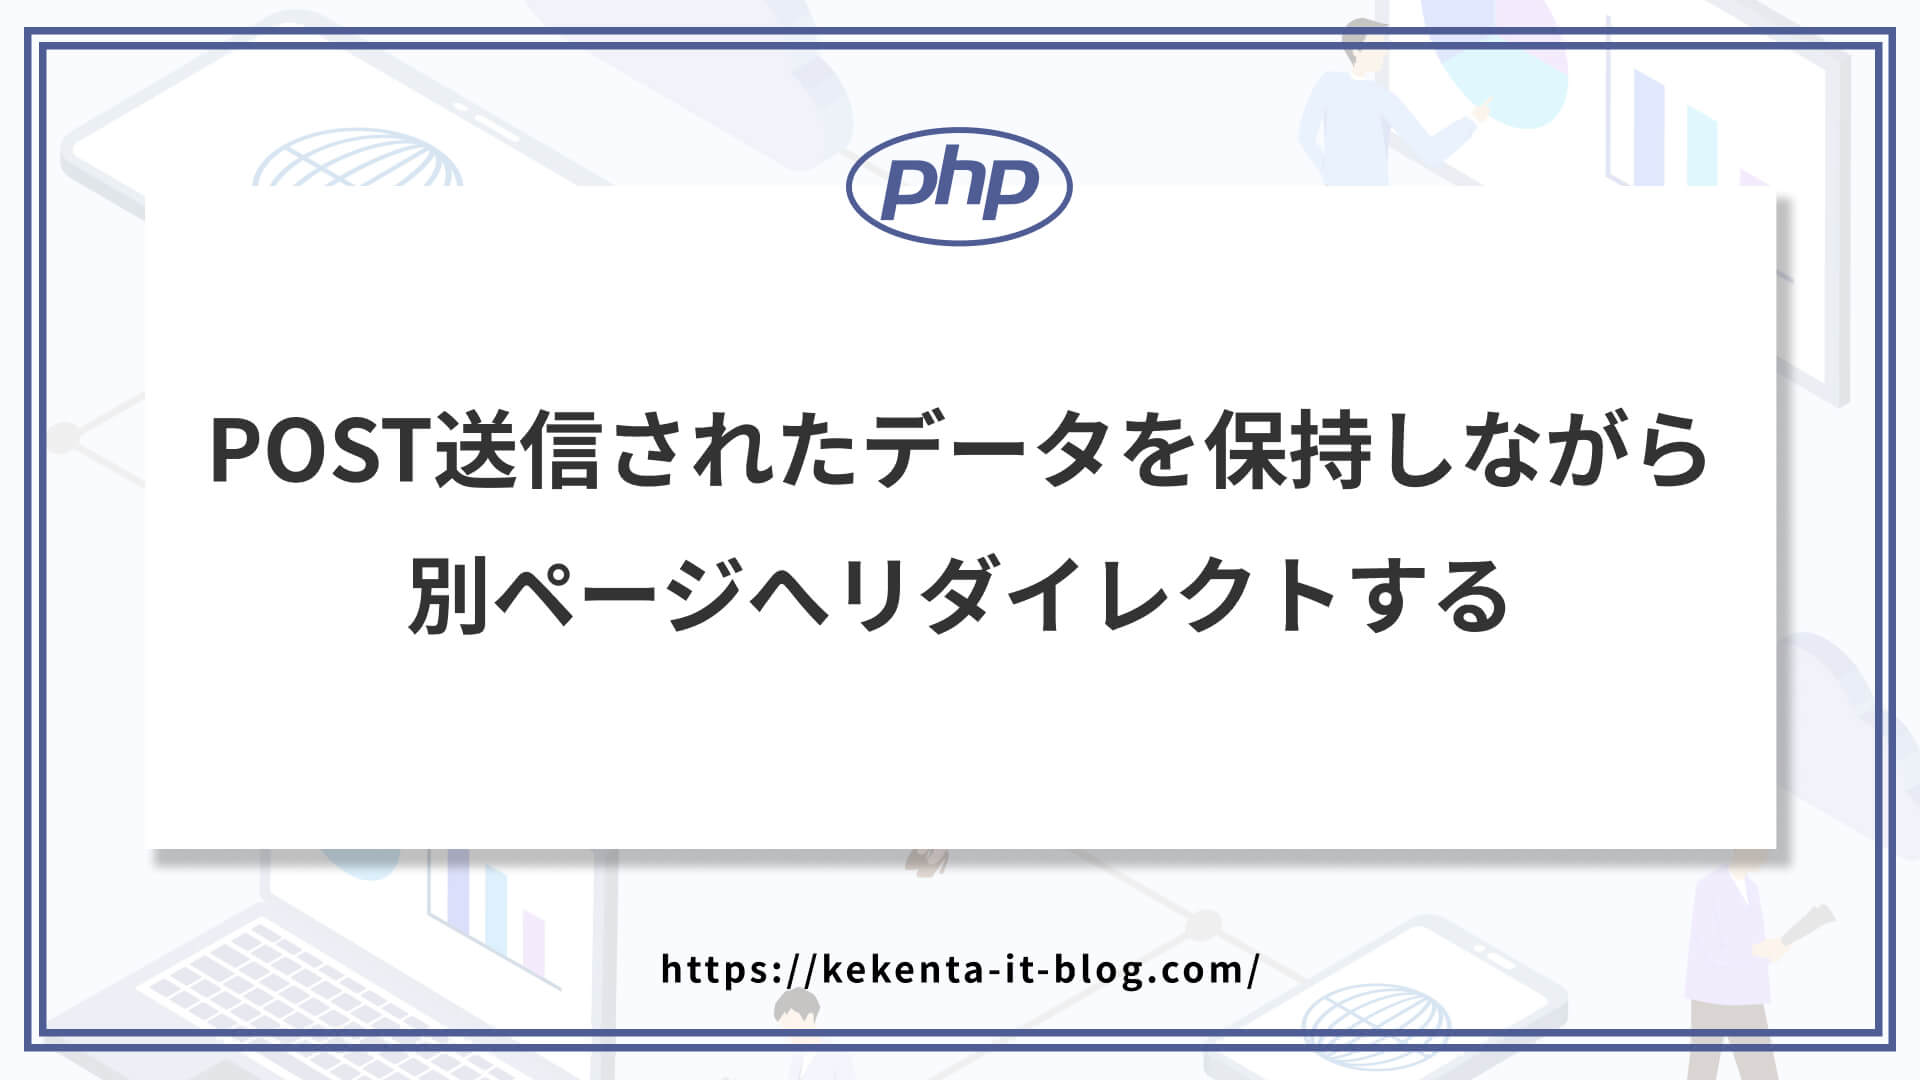 【PHP】POST送信されたデータを保持しながら別ページへリダイレクトする